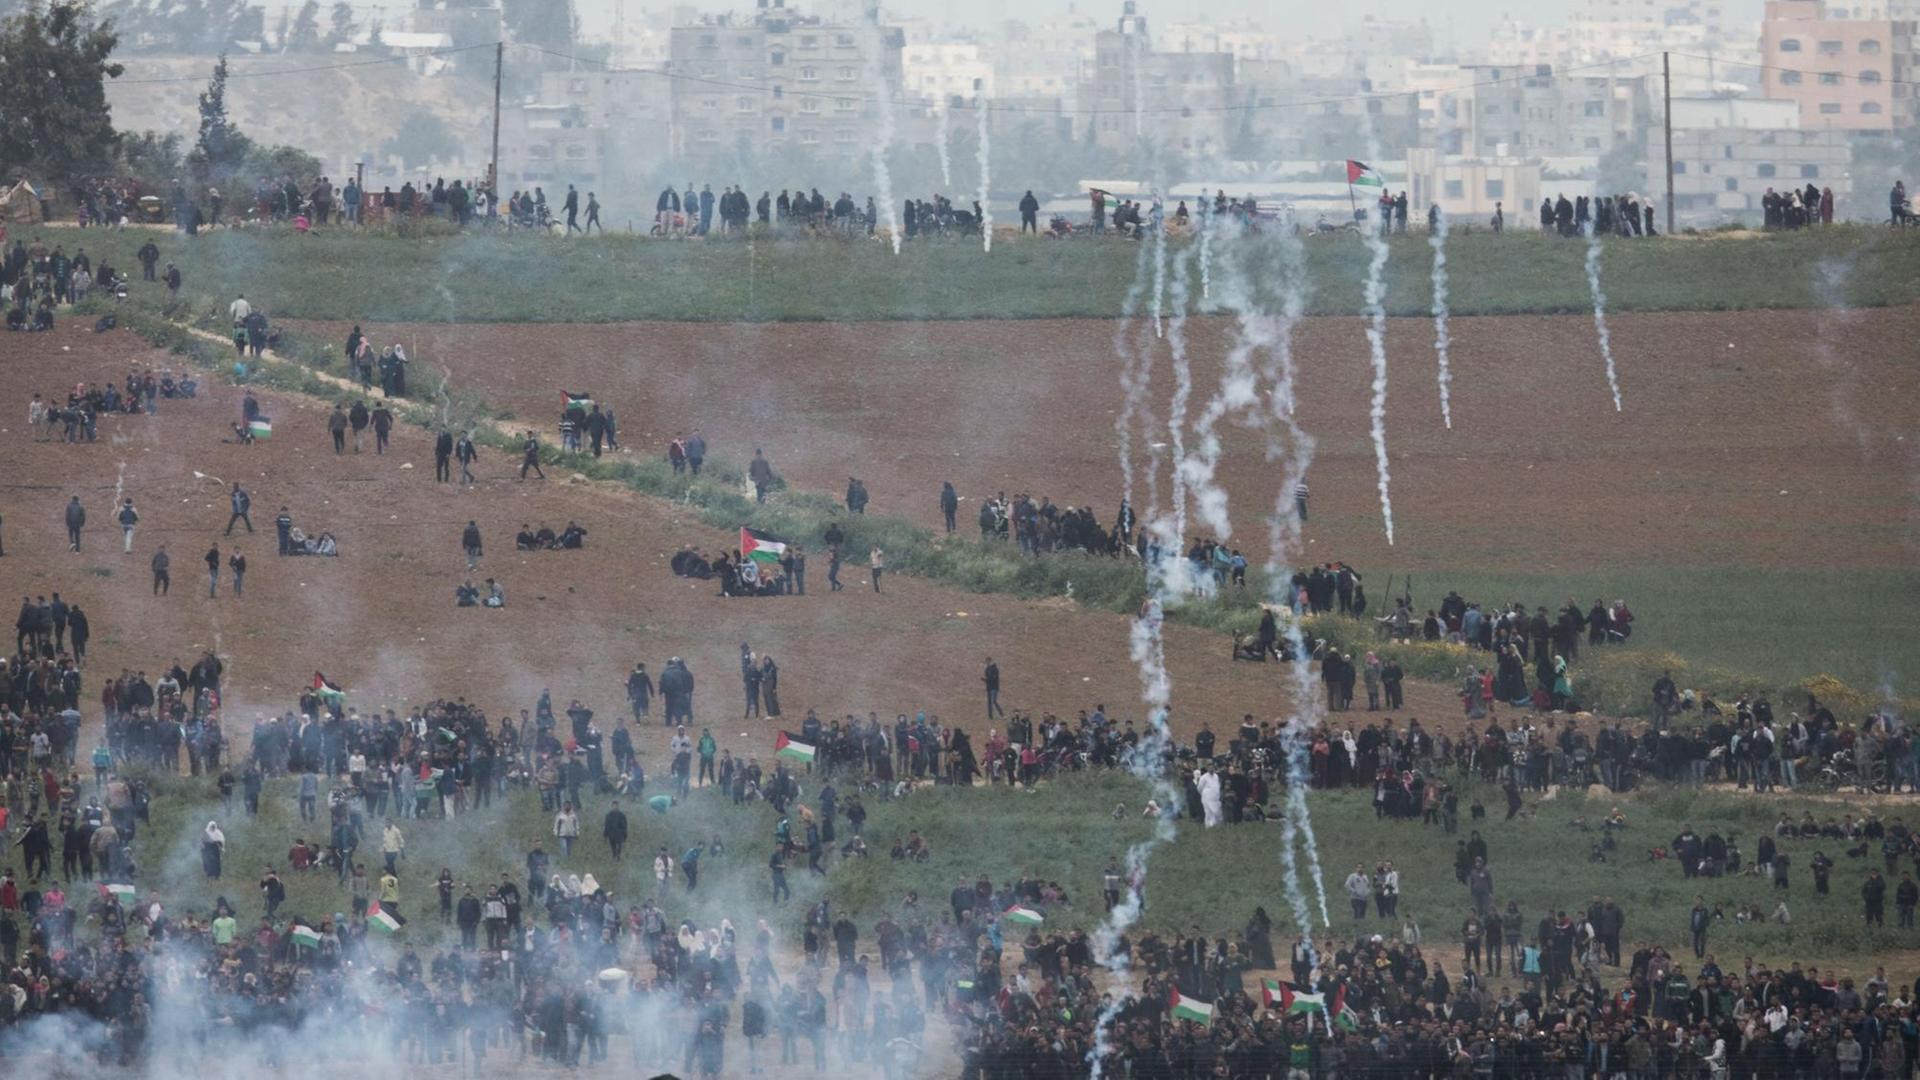 Palästinenser versammeln sich für den "Marsch der Rückkehr" an der Grenze zu Israel, während die israelische Armee Tränengas einsetzt.